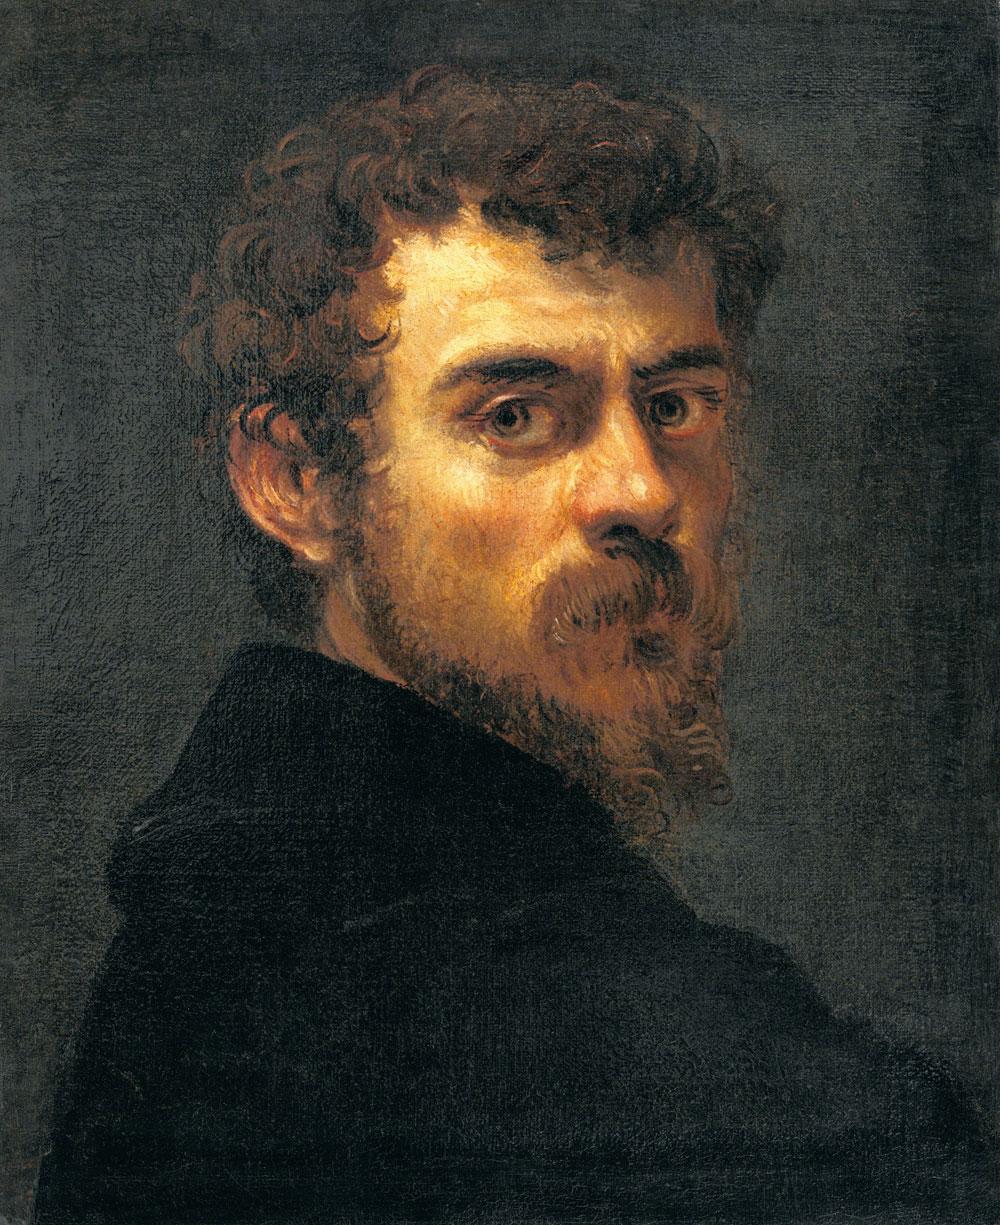 Autoportrait, Jacopo Robusti, 1547.